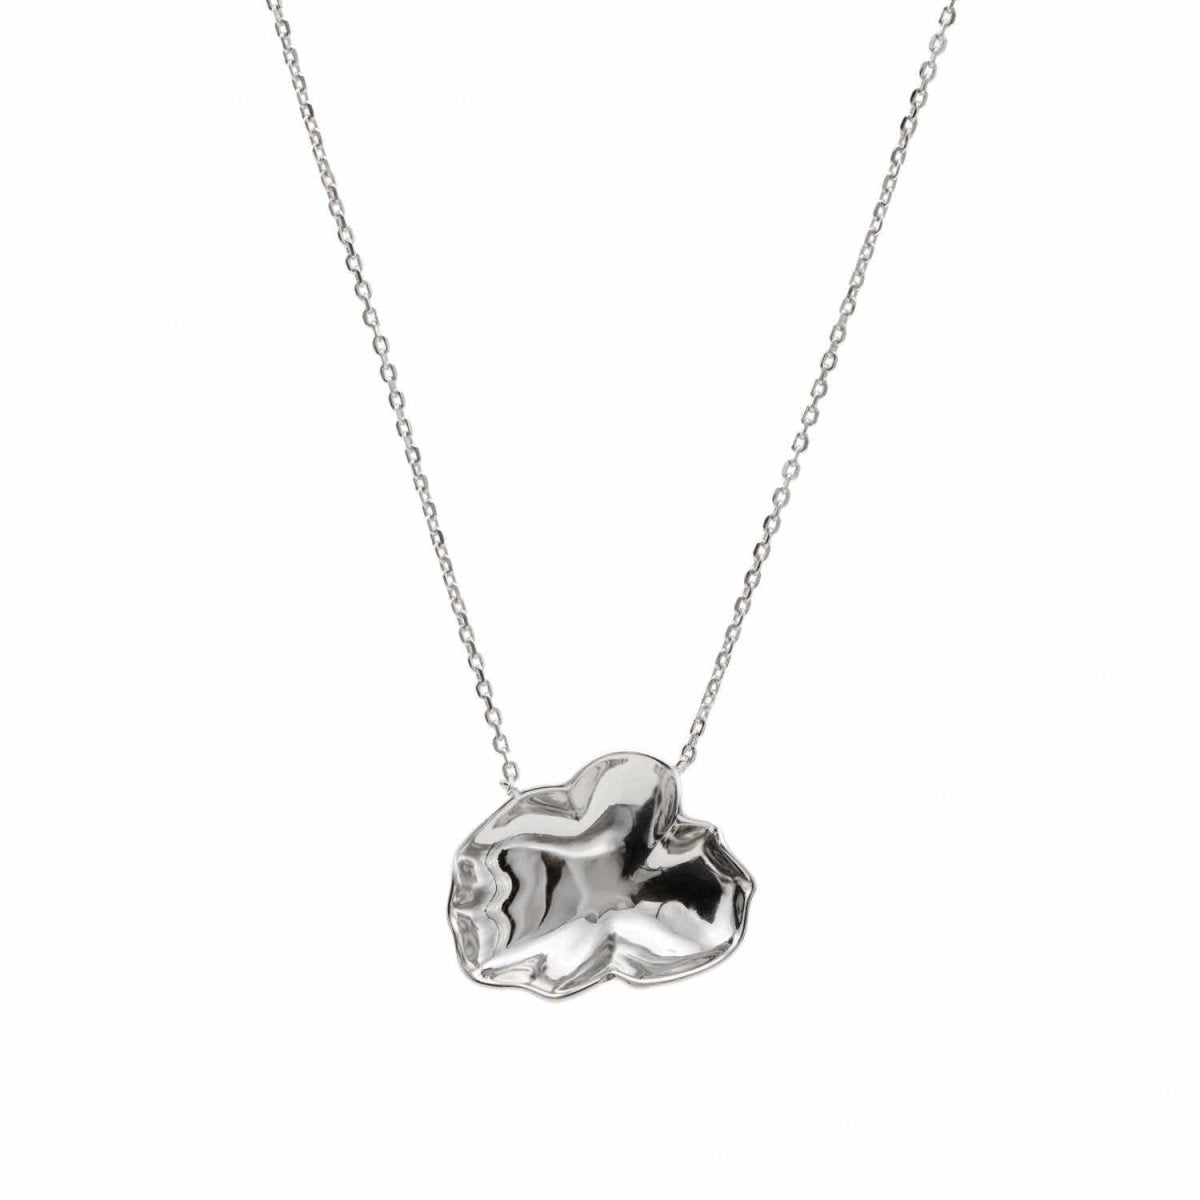 Necklace - Necklaces - Original silver necklaces circular convex design